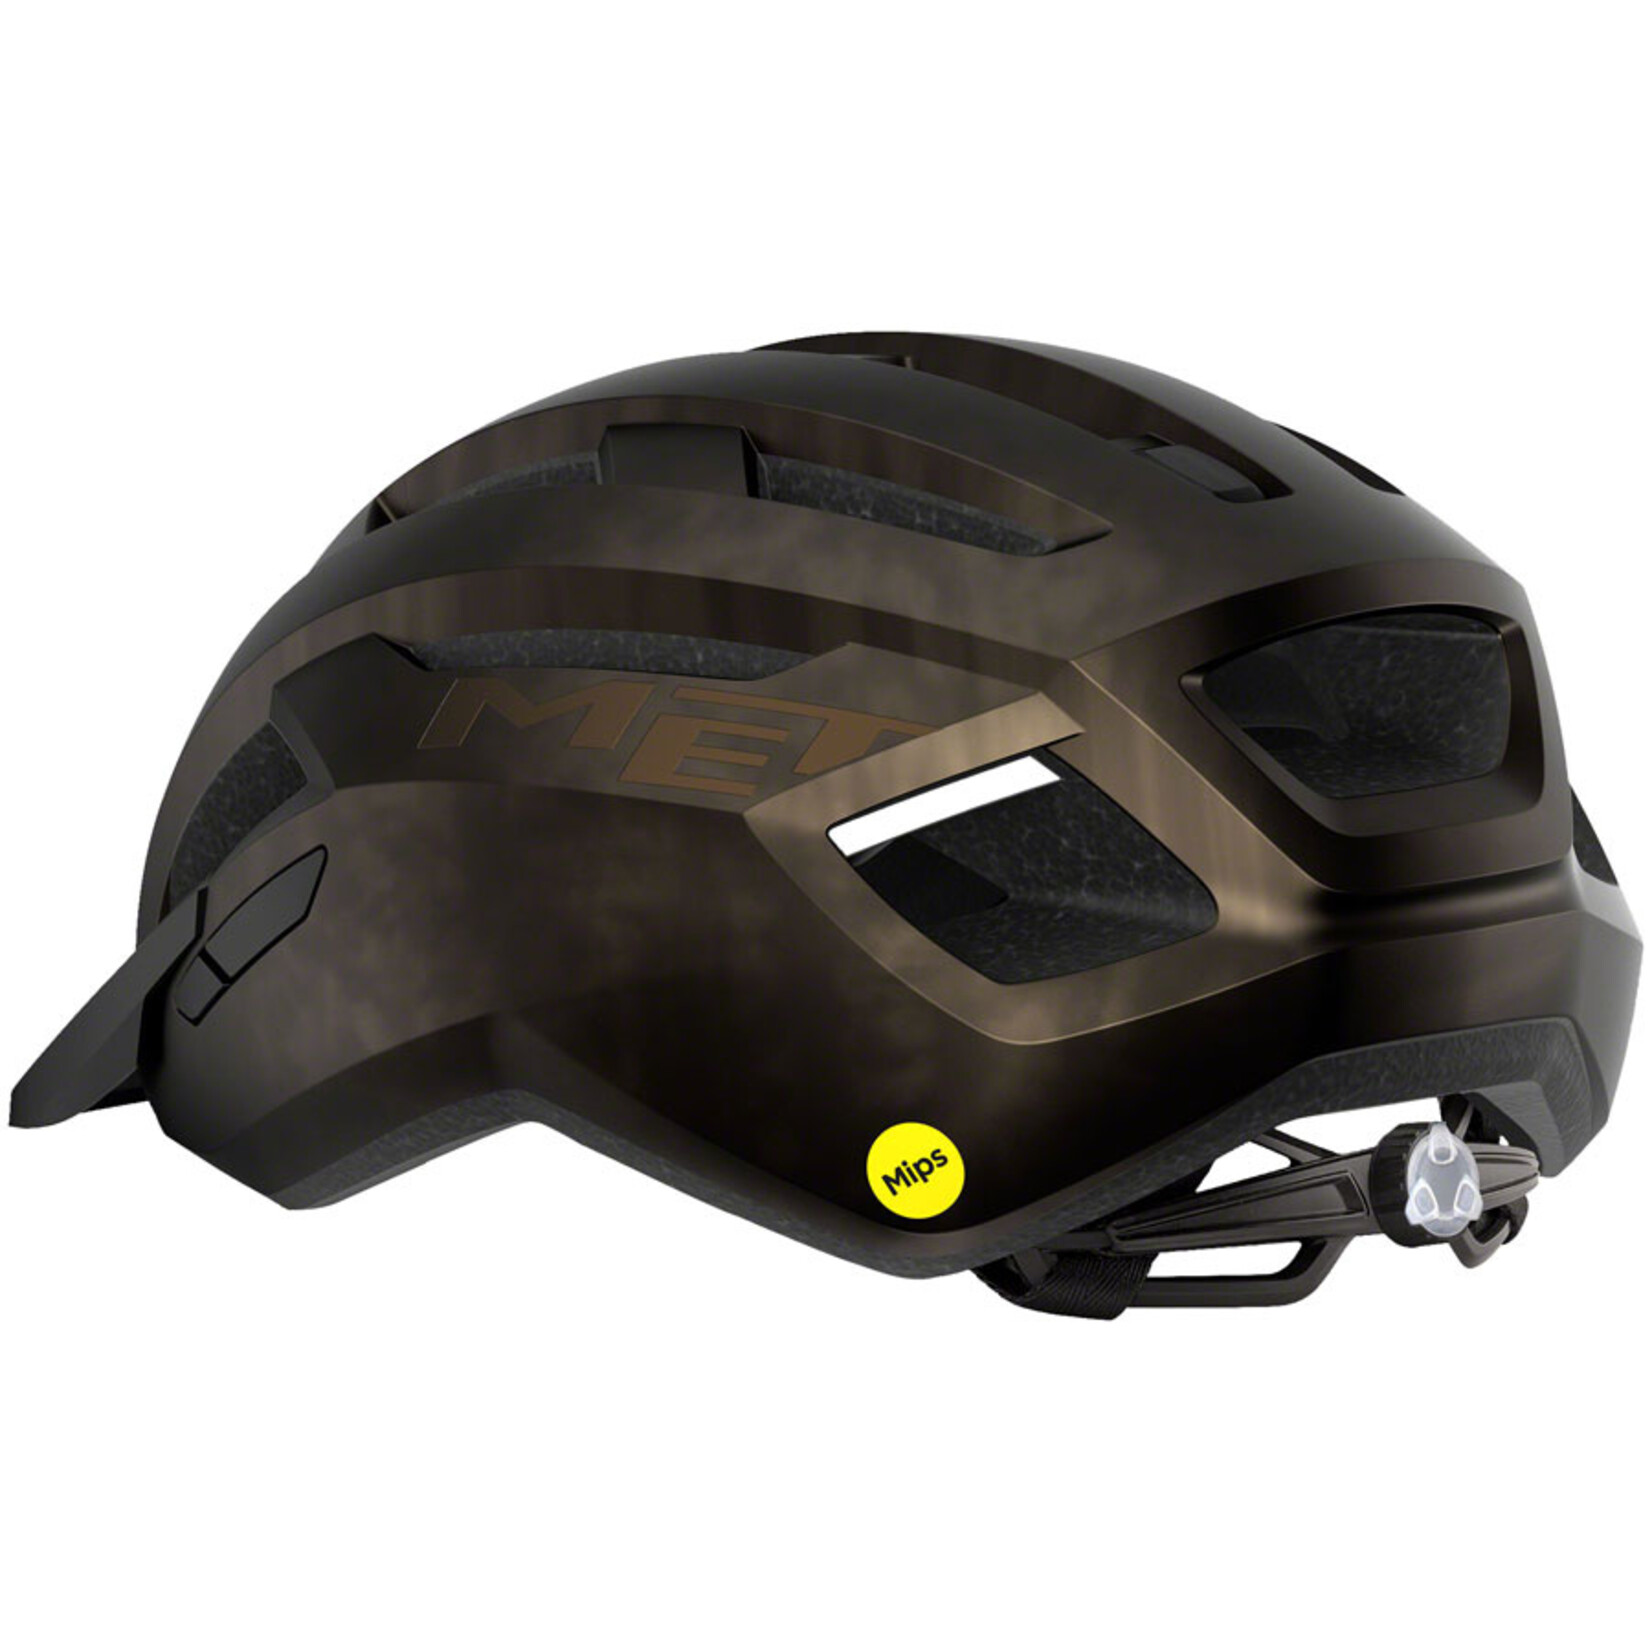 MET Helmets MET Allroad MIPS Helmet - Bronze, Medium